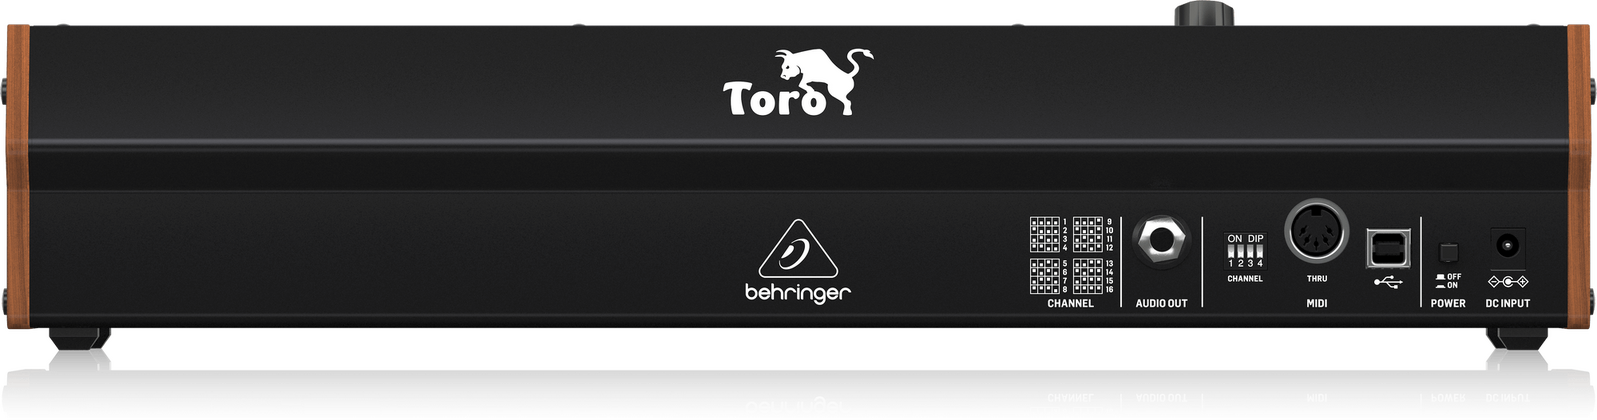 Behringer Toro